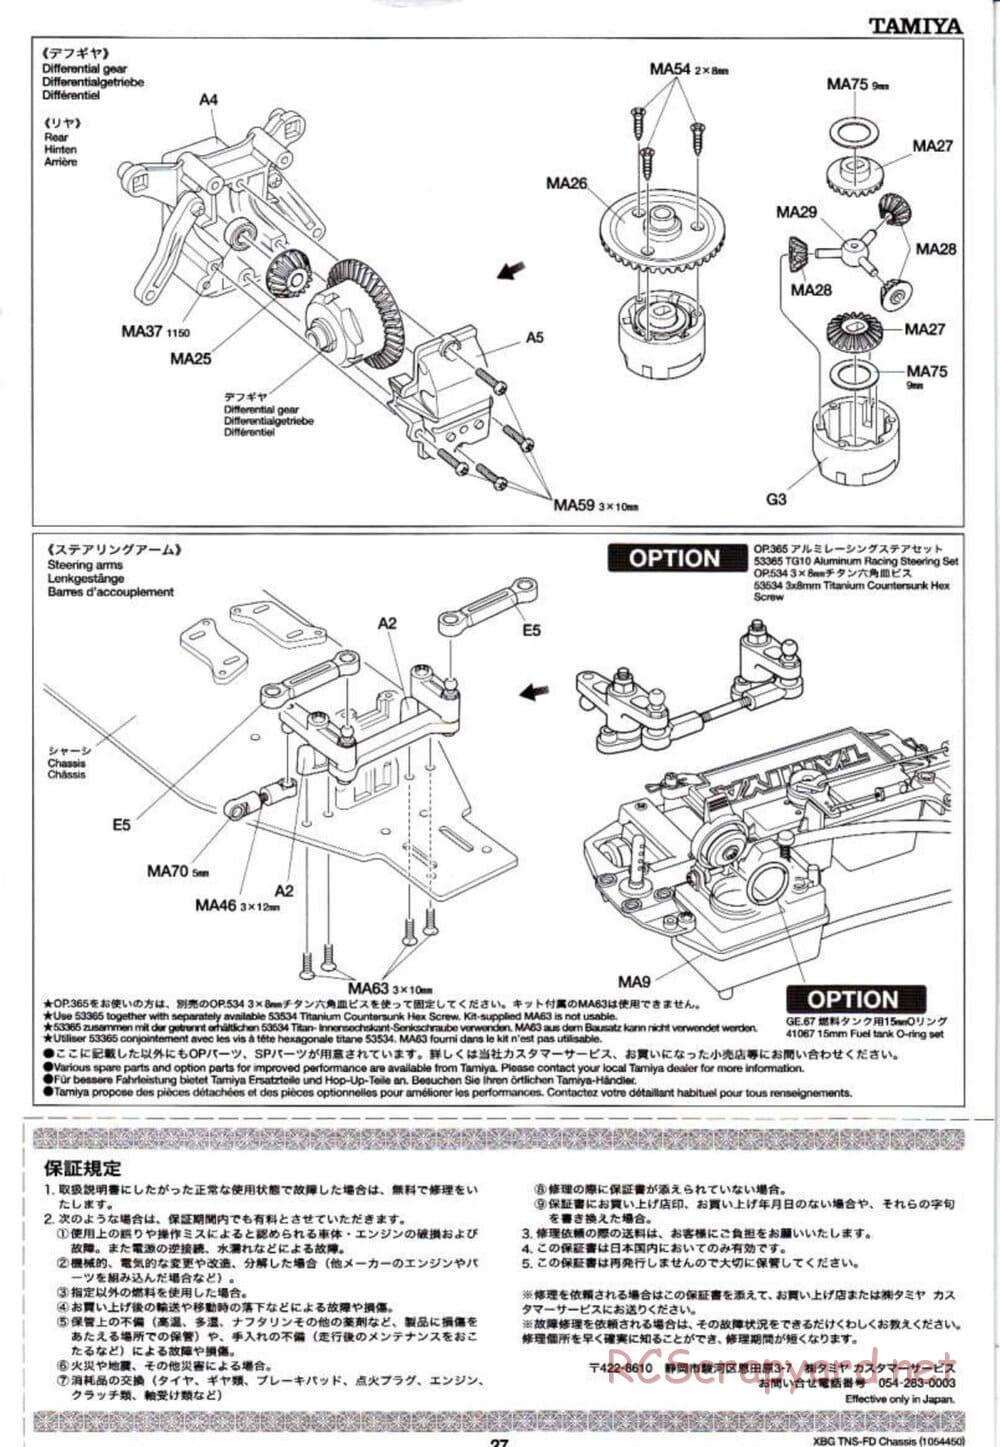 Tamiya - TNS-FD Chassis - Manual - Page 27